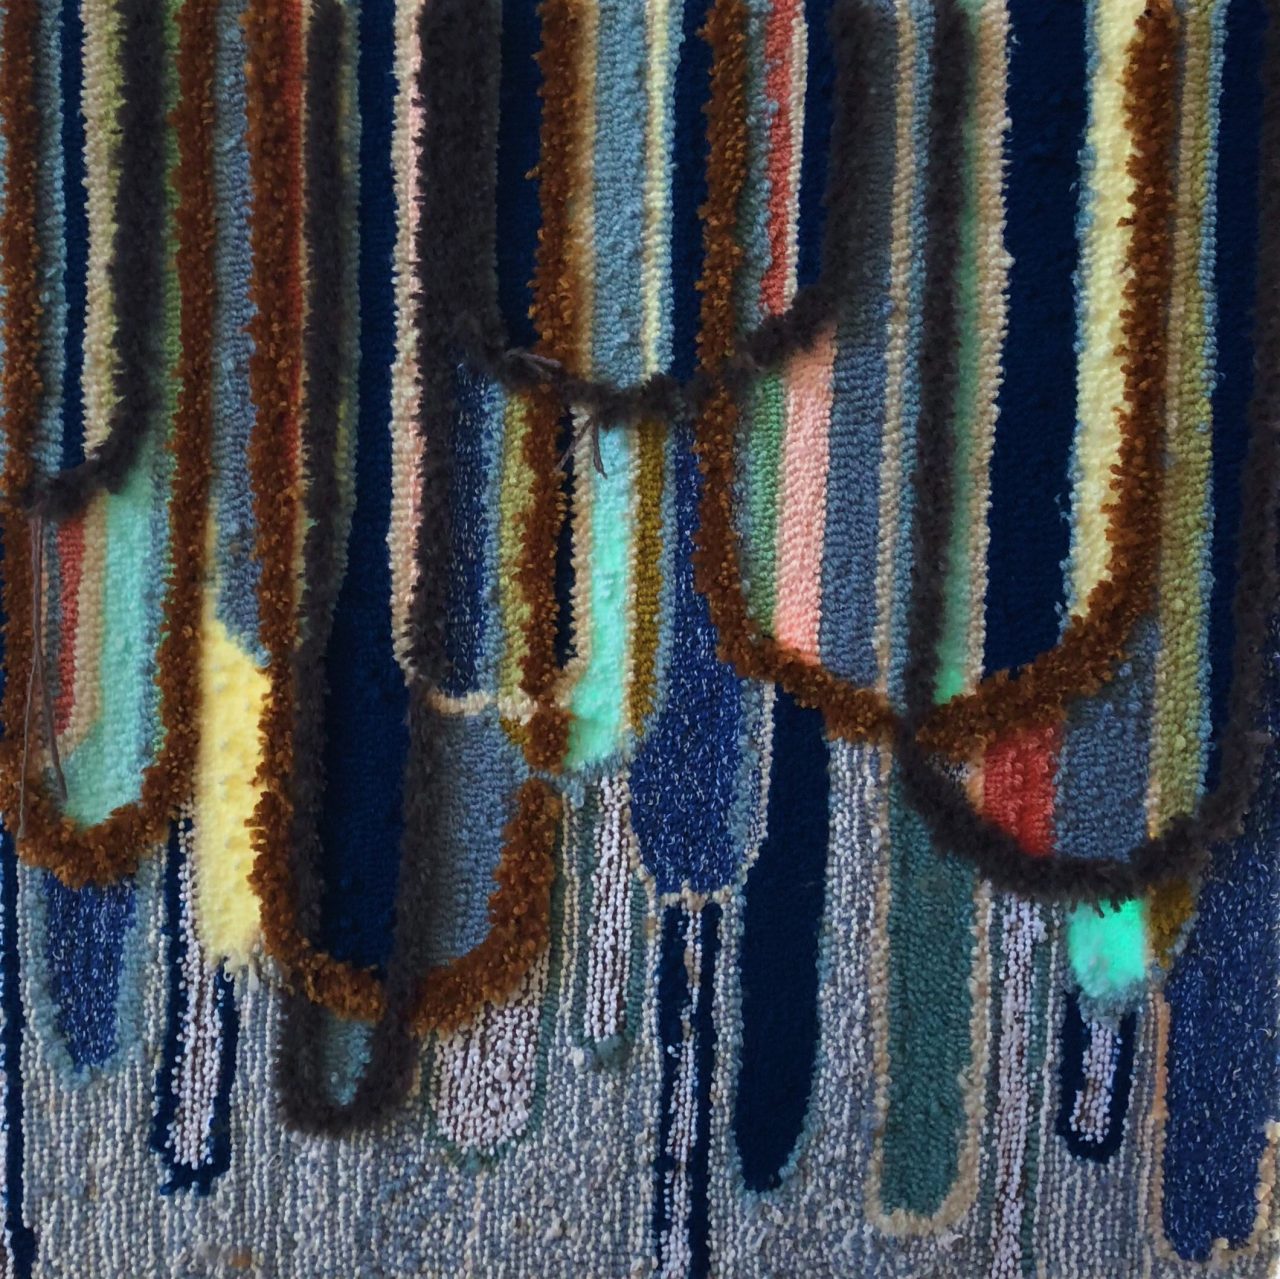 Colourful textile piece